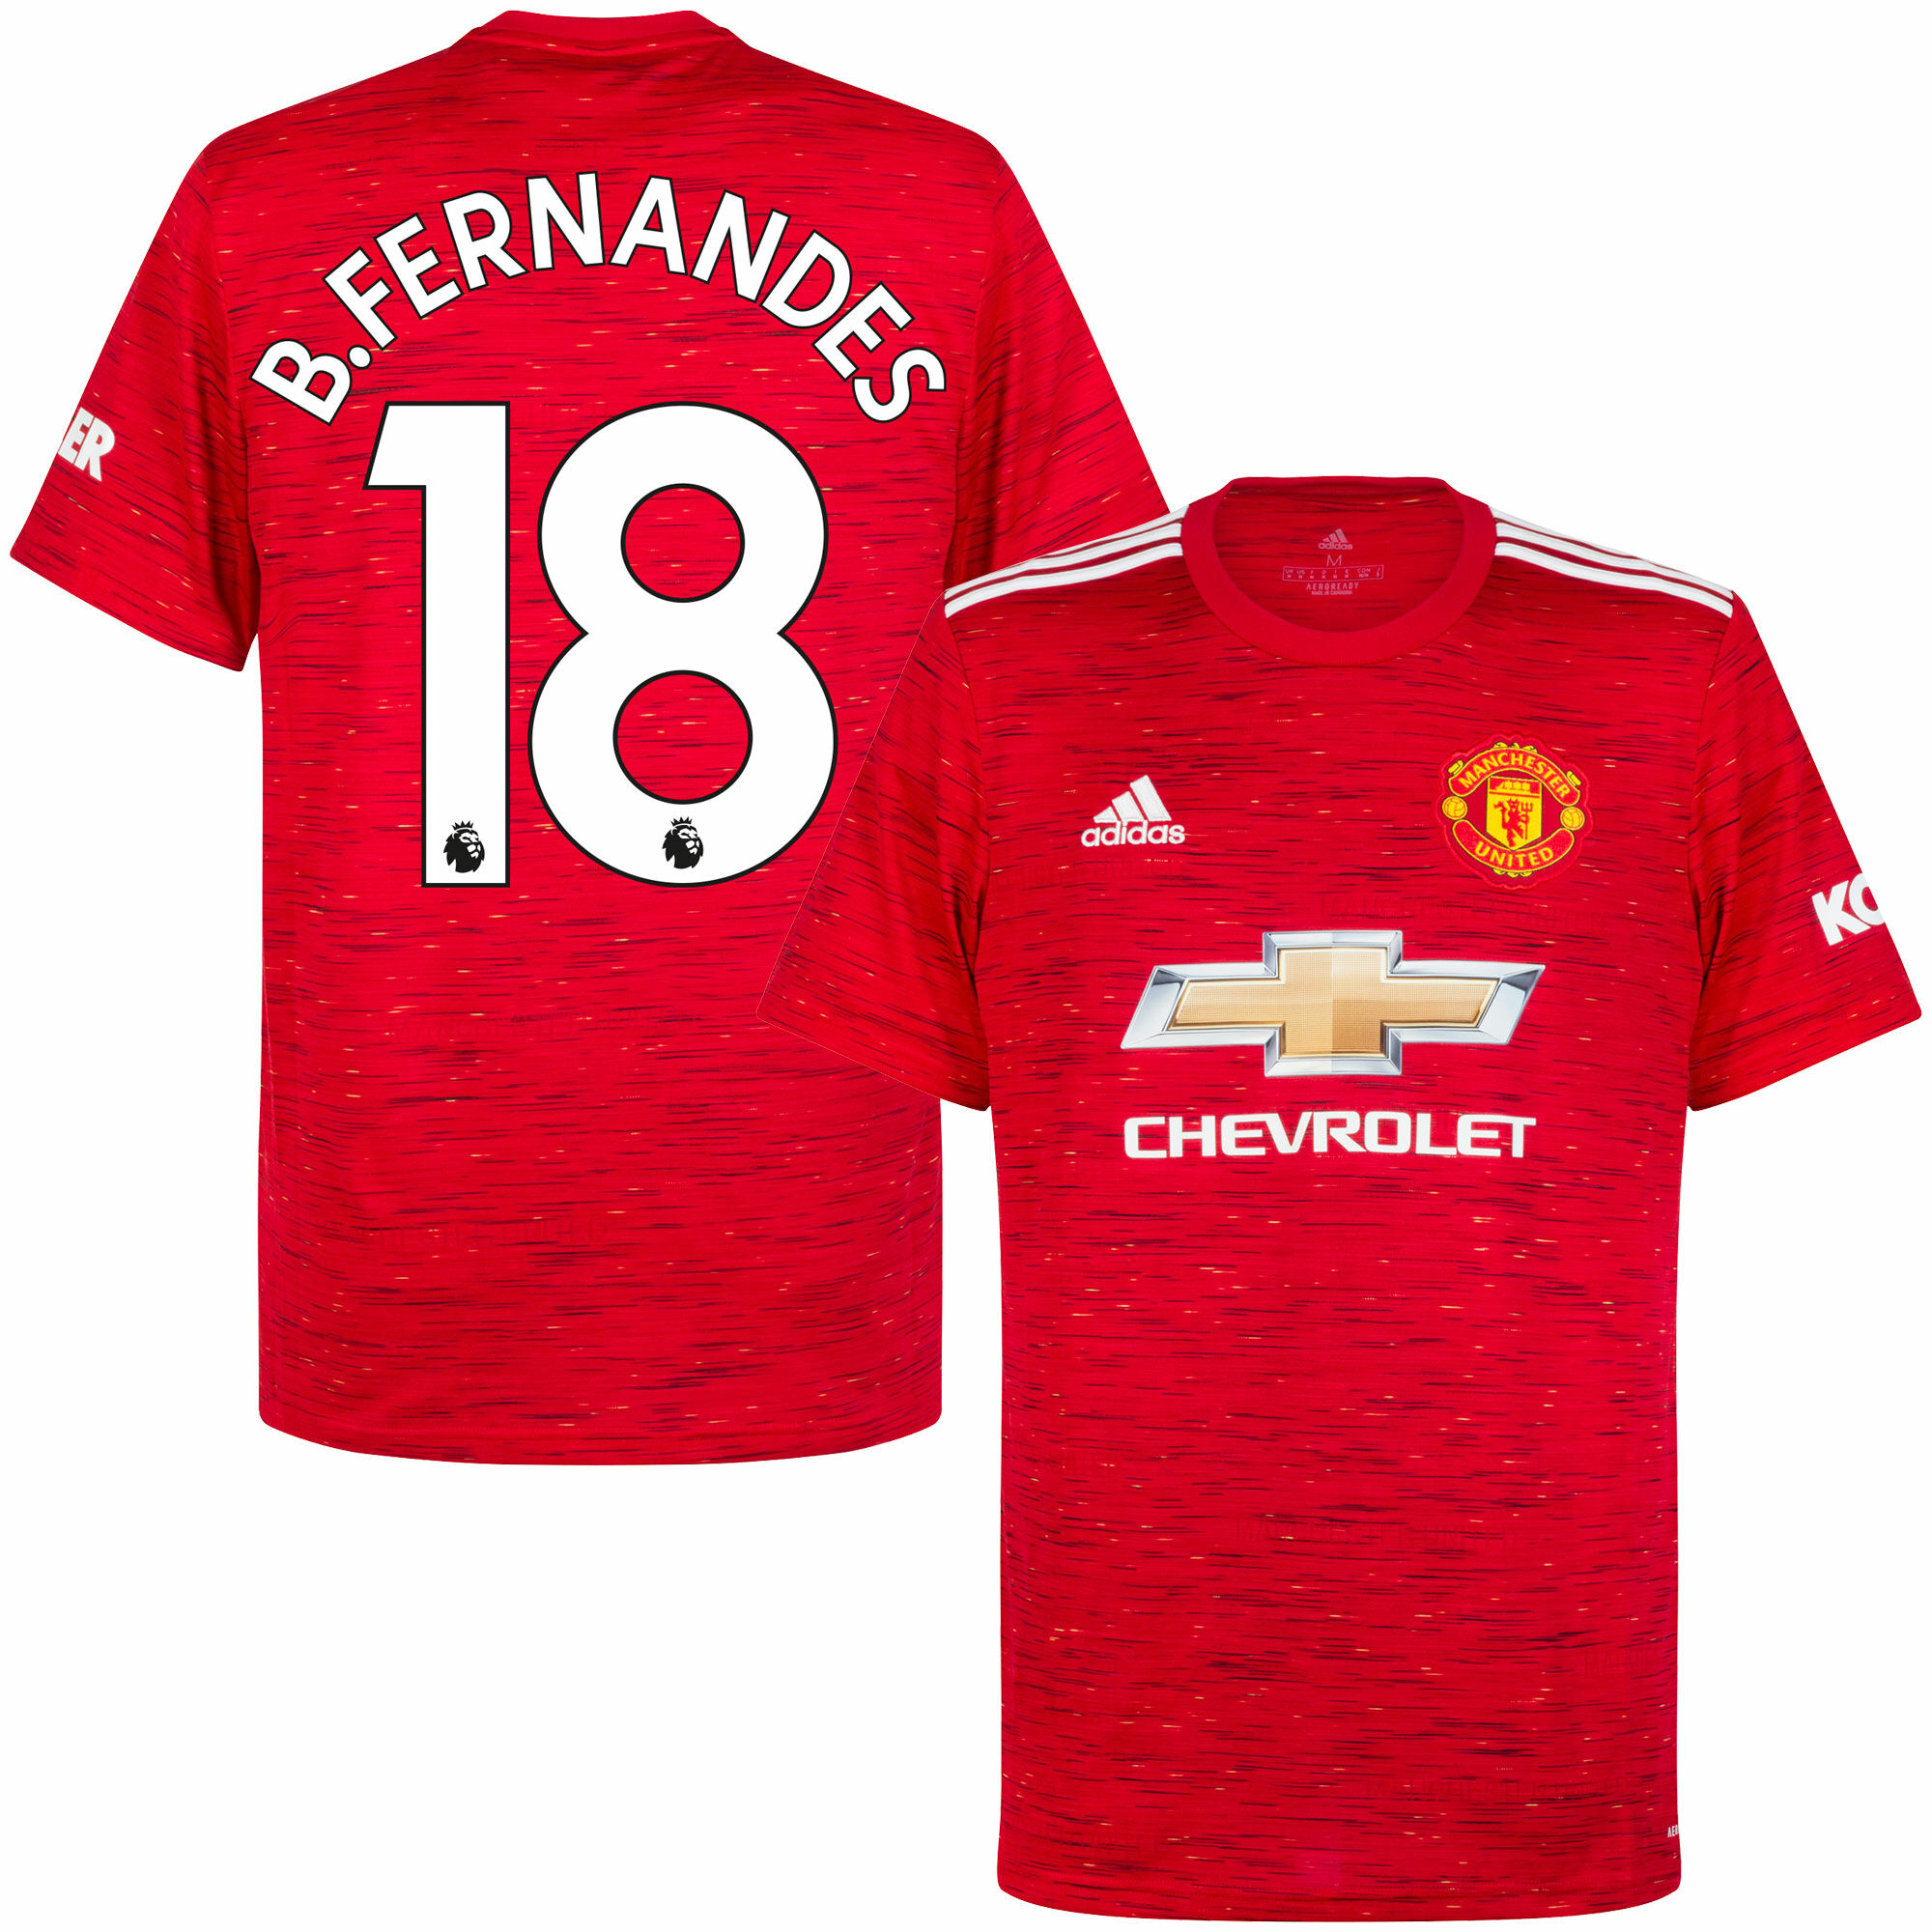 Manchester United - Dres fotbalový - číslo 18, sezóna 2020/21, Bruno Fernandes, domácí, červený